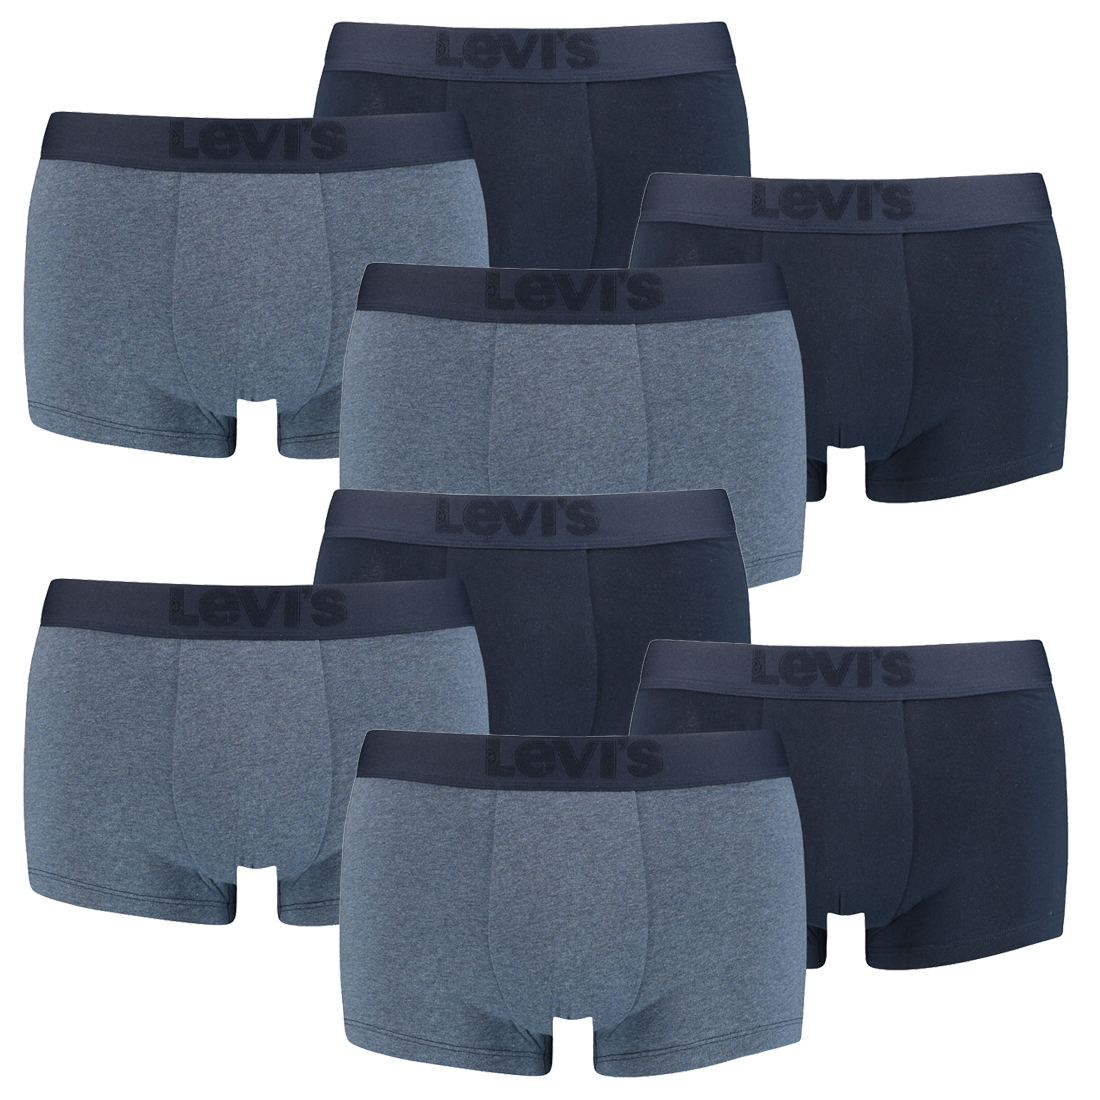 8er Pack Levis Herren Premium Trunk Boxer Shorts Unterhose Pant Unterwäsche